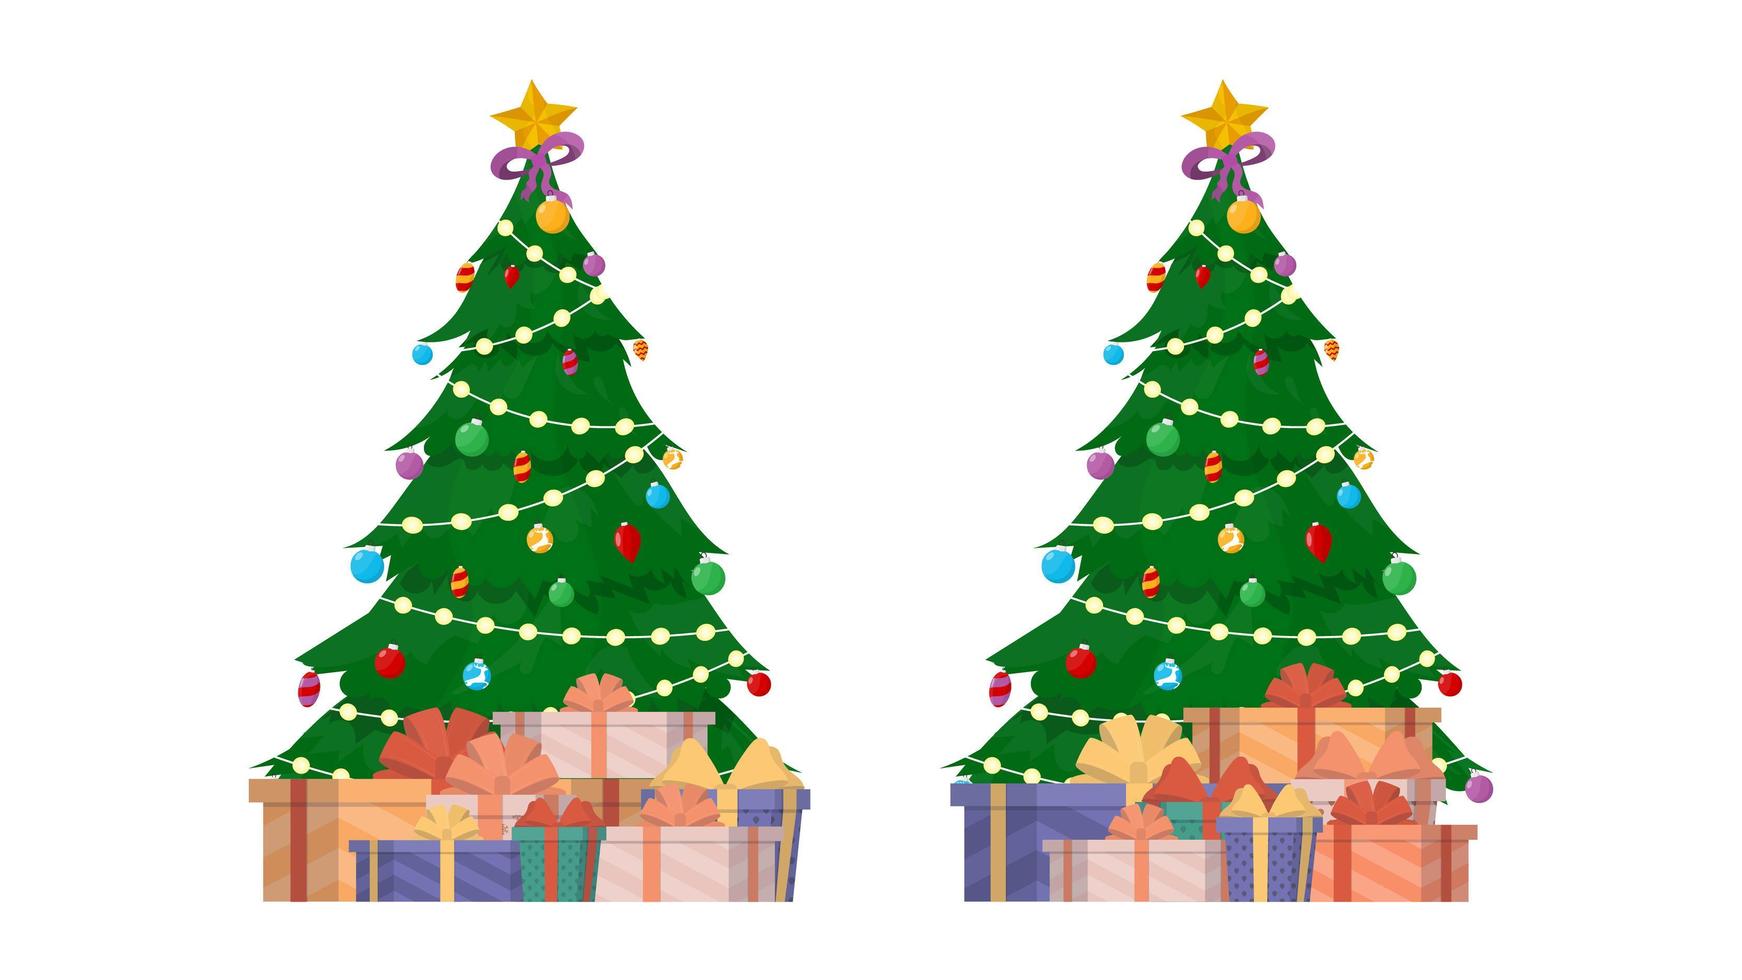 banner de año nuevo con árbol de navidad y regalos. árbol de coníferas verde. regalos debajo del árbol. vector. vector